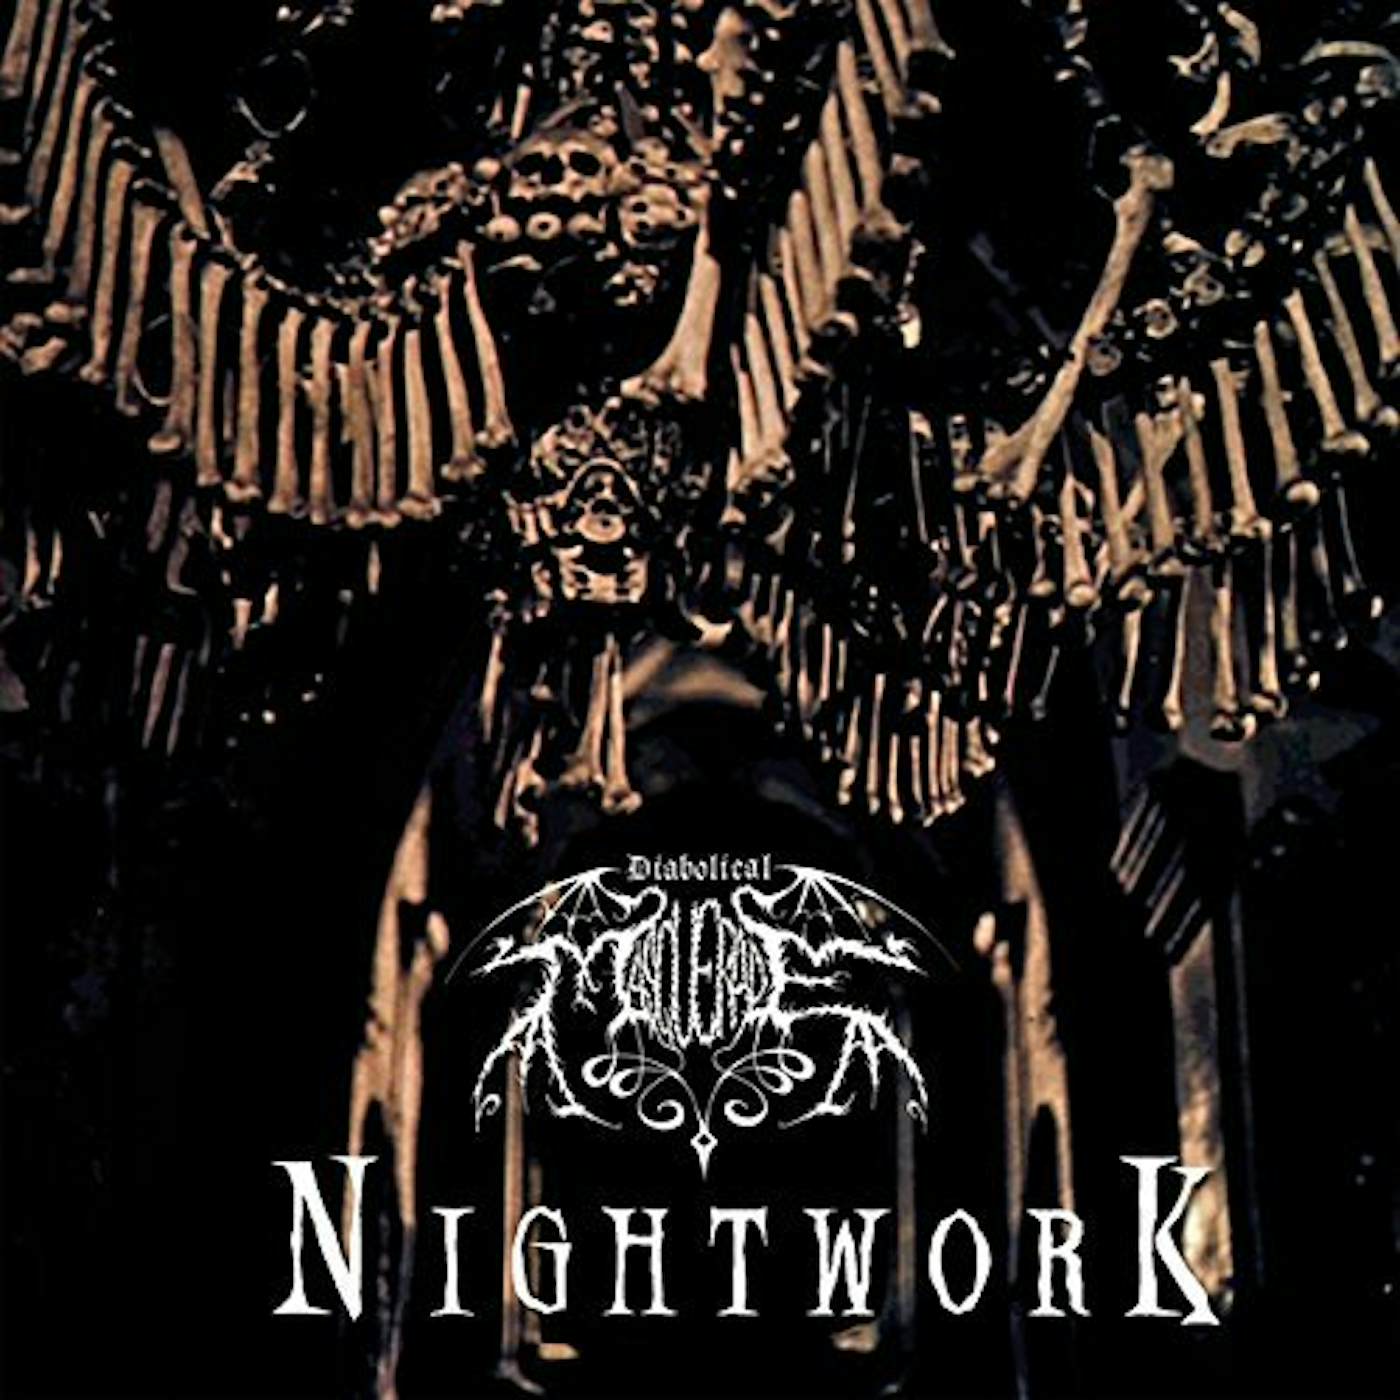 Diabolical Masquerade Nightwork Vinyl Record